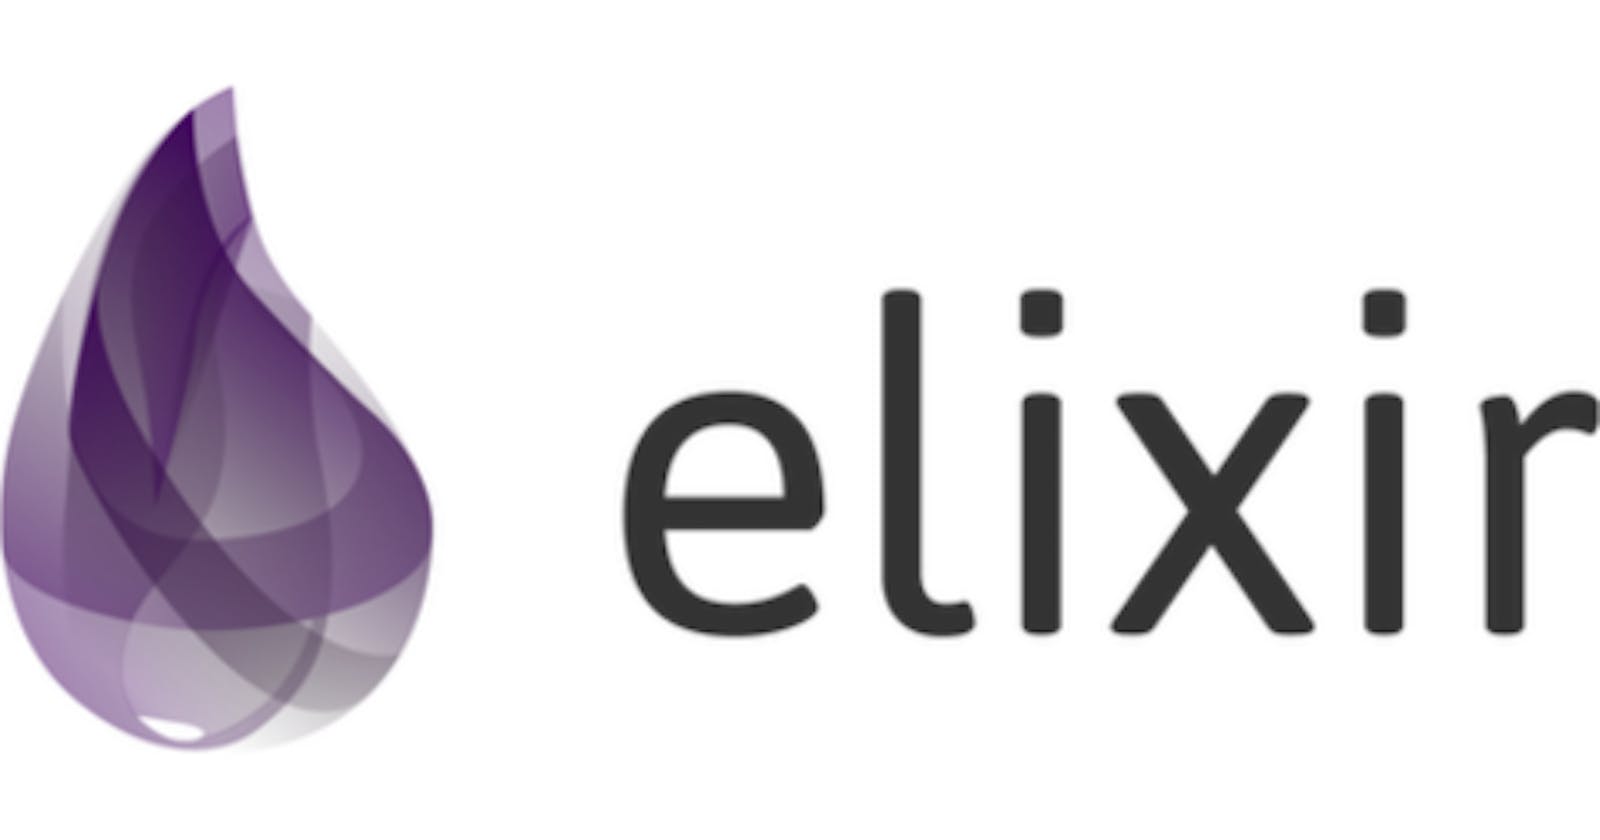 Features of Elixir